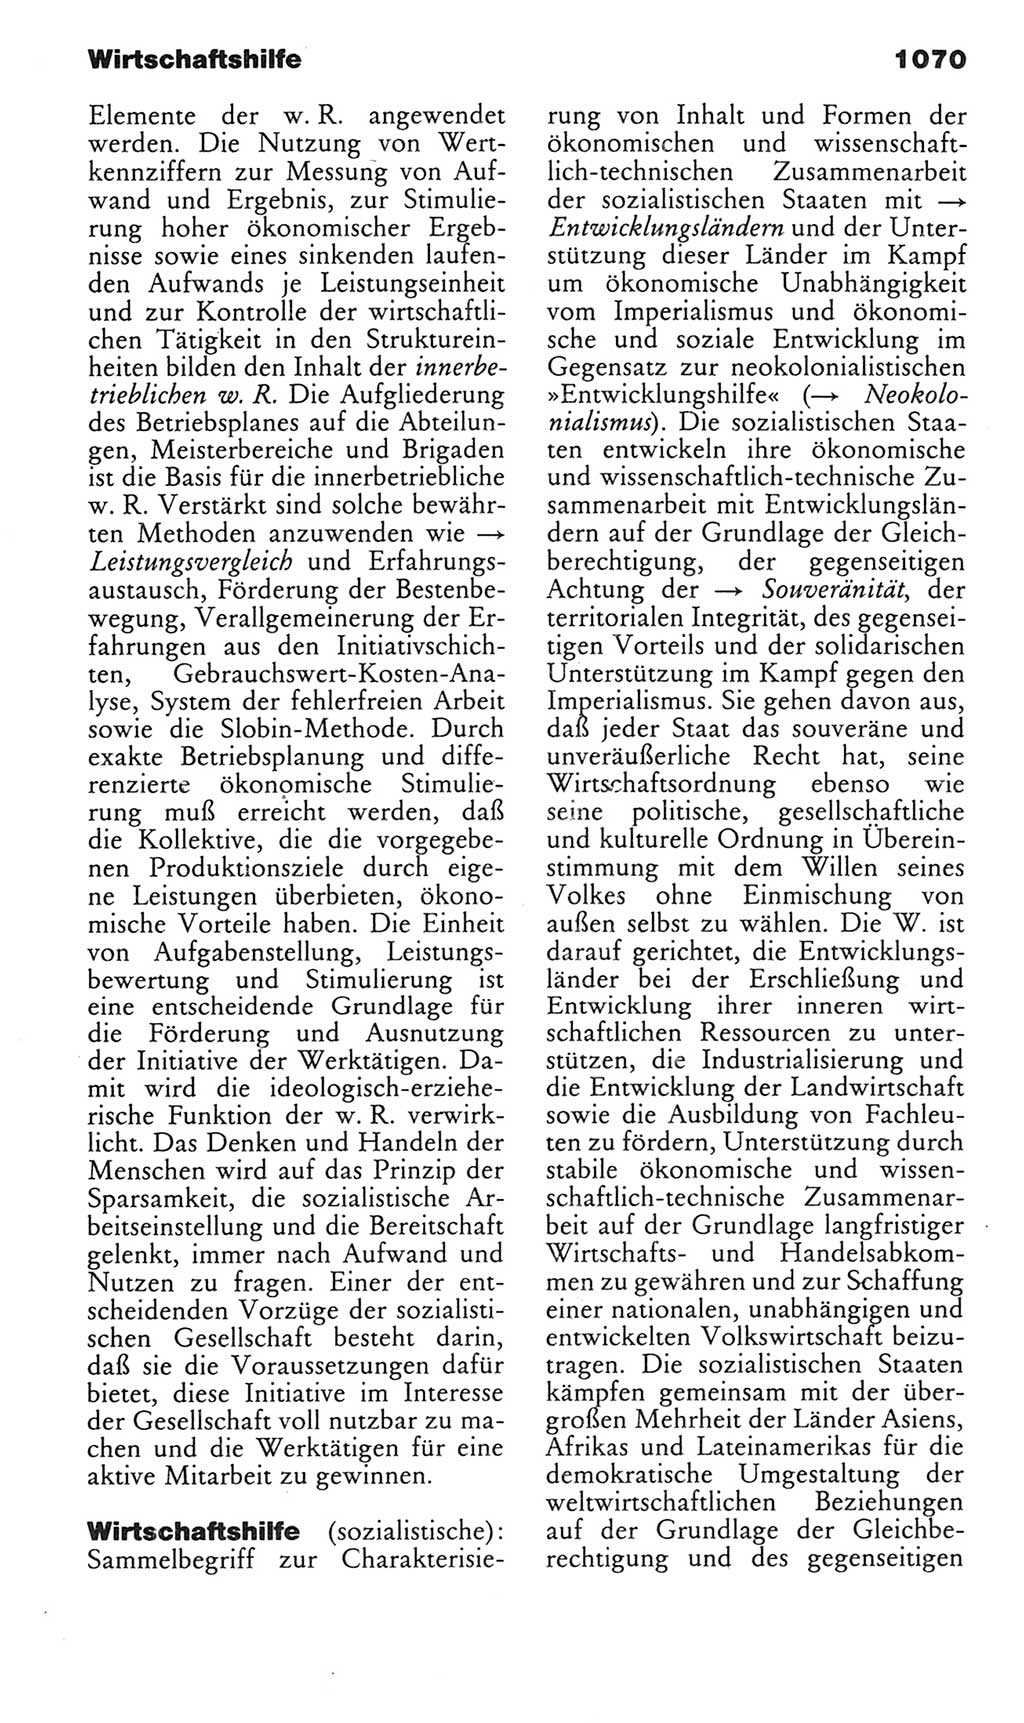 Kleines politisches Wörterbuch [Deutsche Demokratische Republik (DDR)] 1983, Seite 1070 (Kl. pol. Wb. DDR 1983, S. 1070)